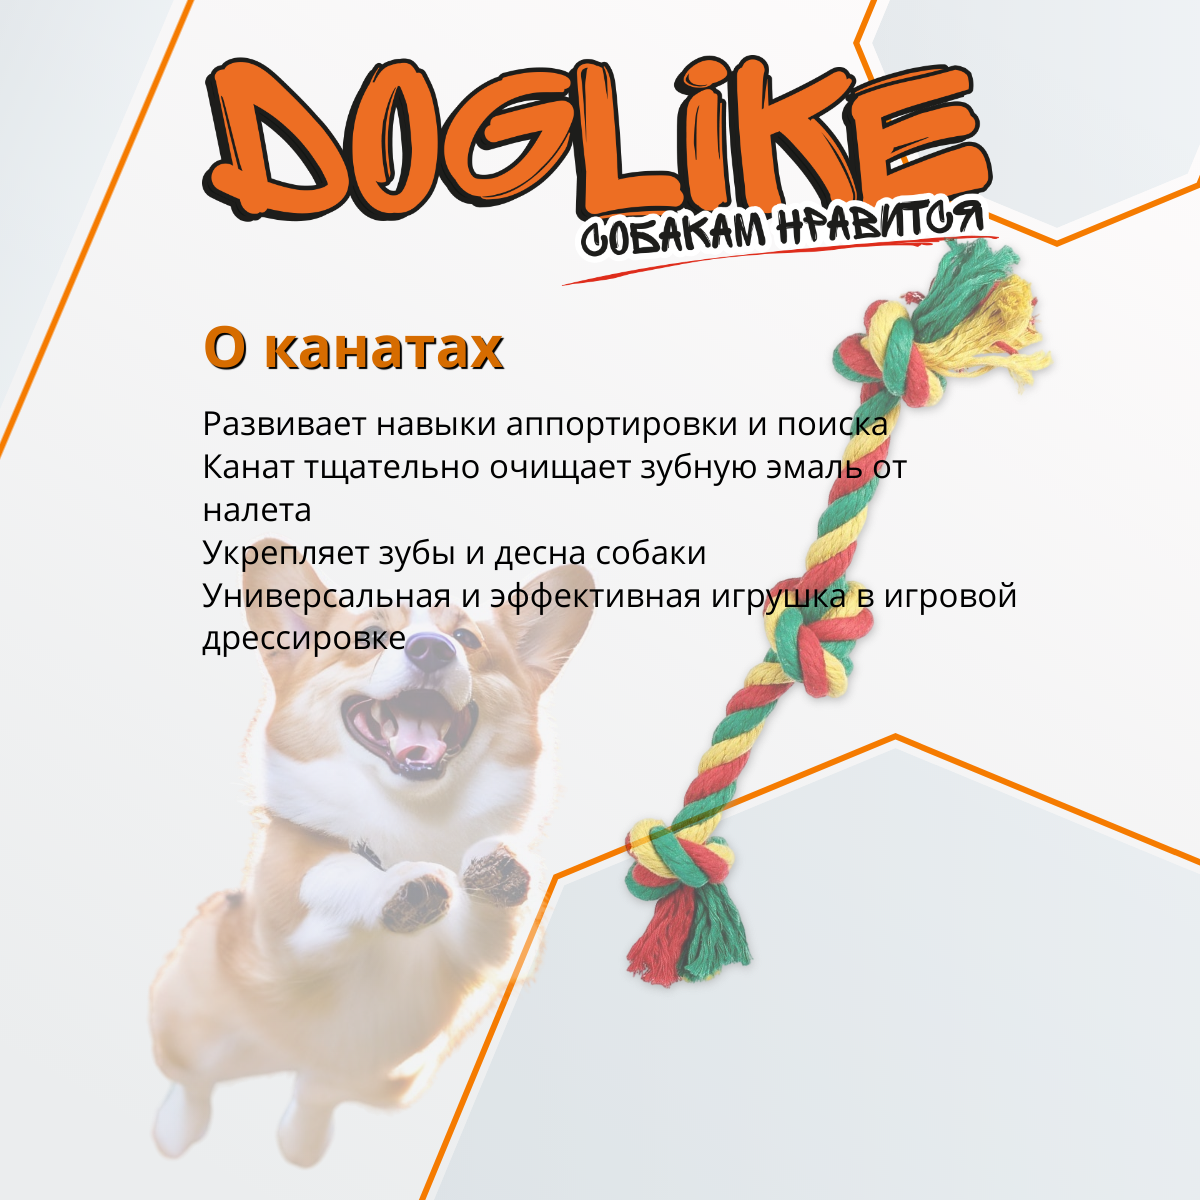 Doglike Грейфер 3 узла большой канат игрушка для собак, текстиль, цветной (33 см) - фото №8